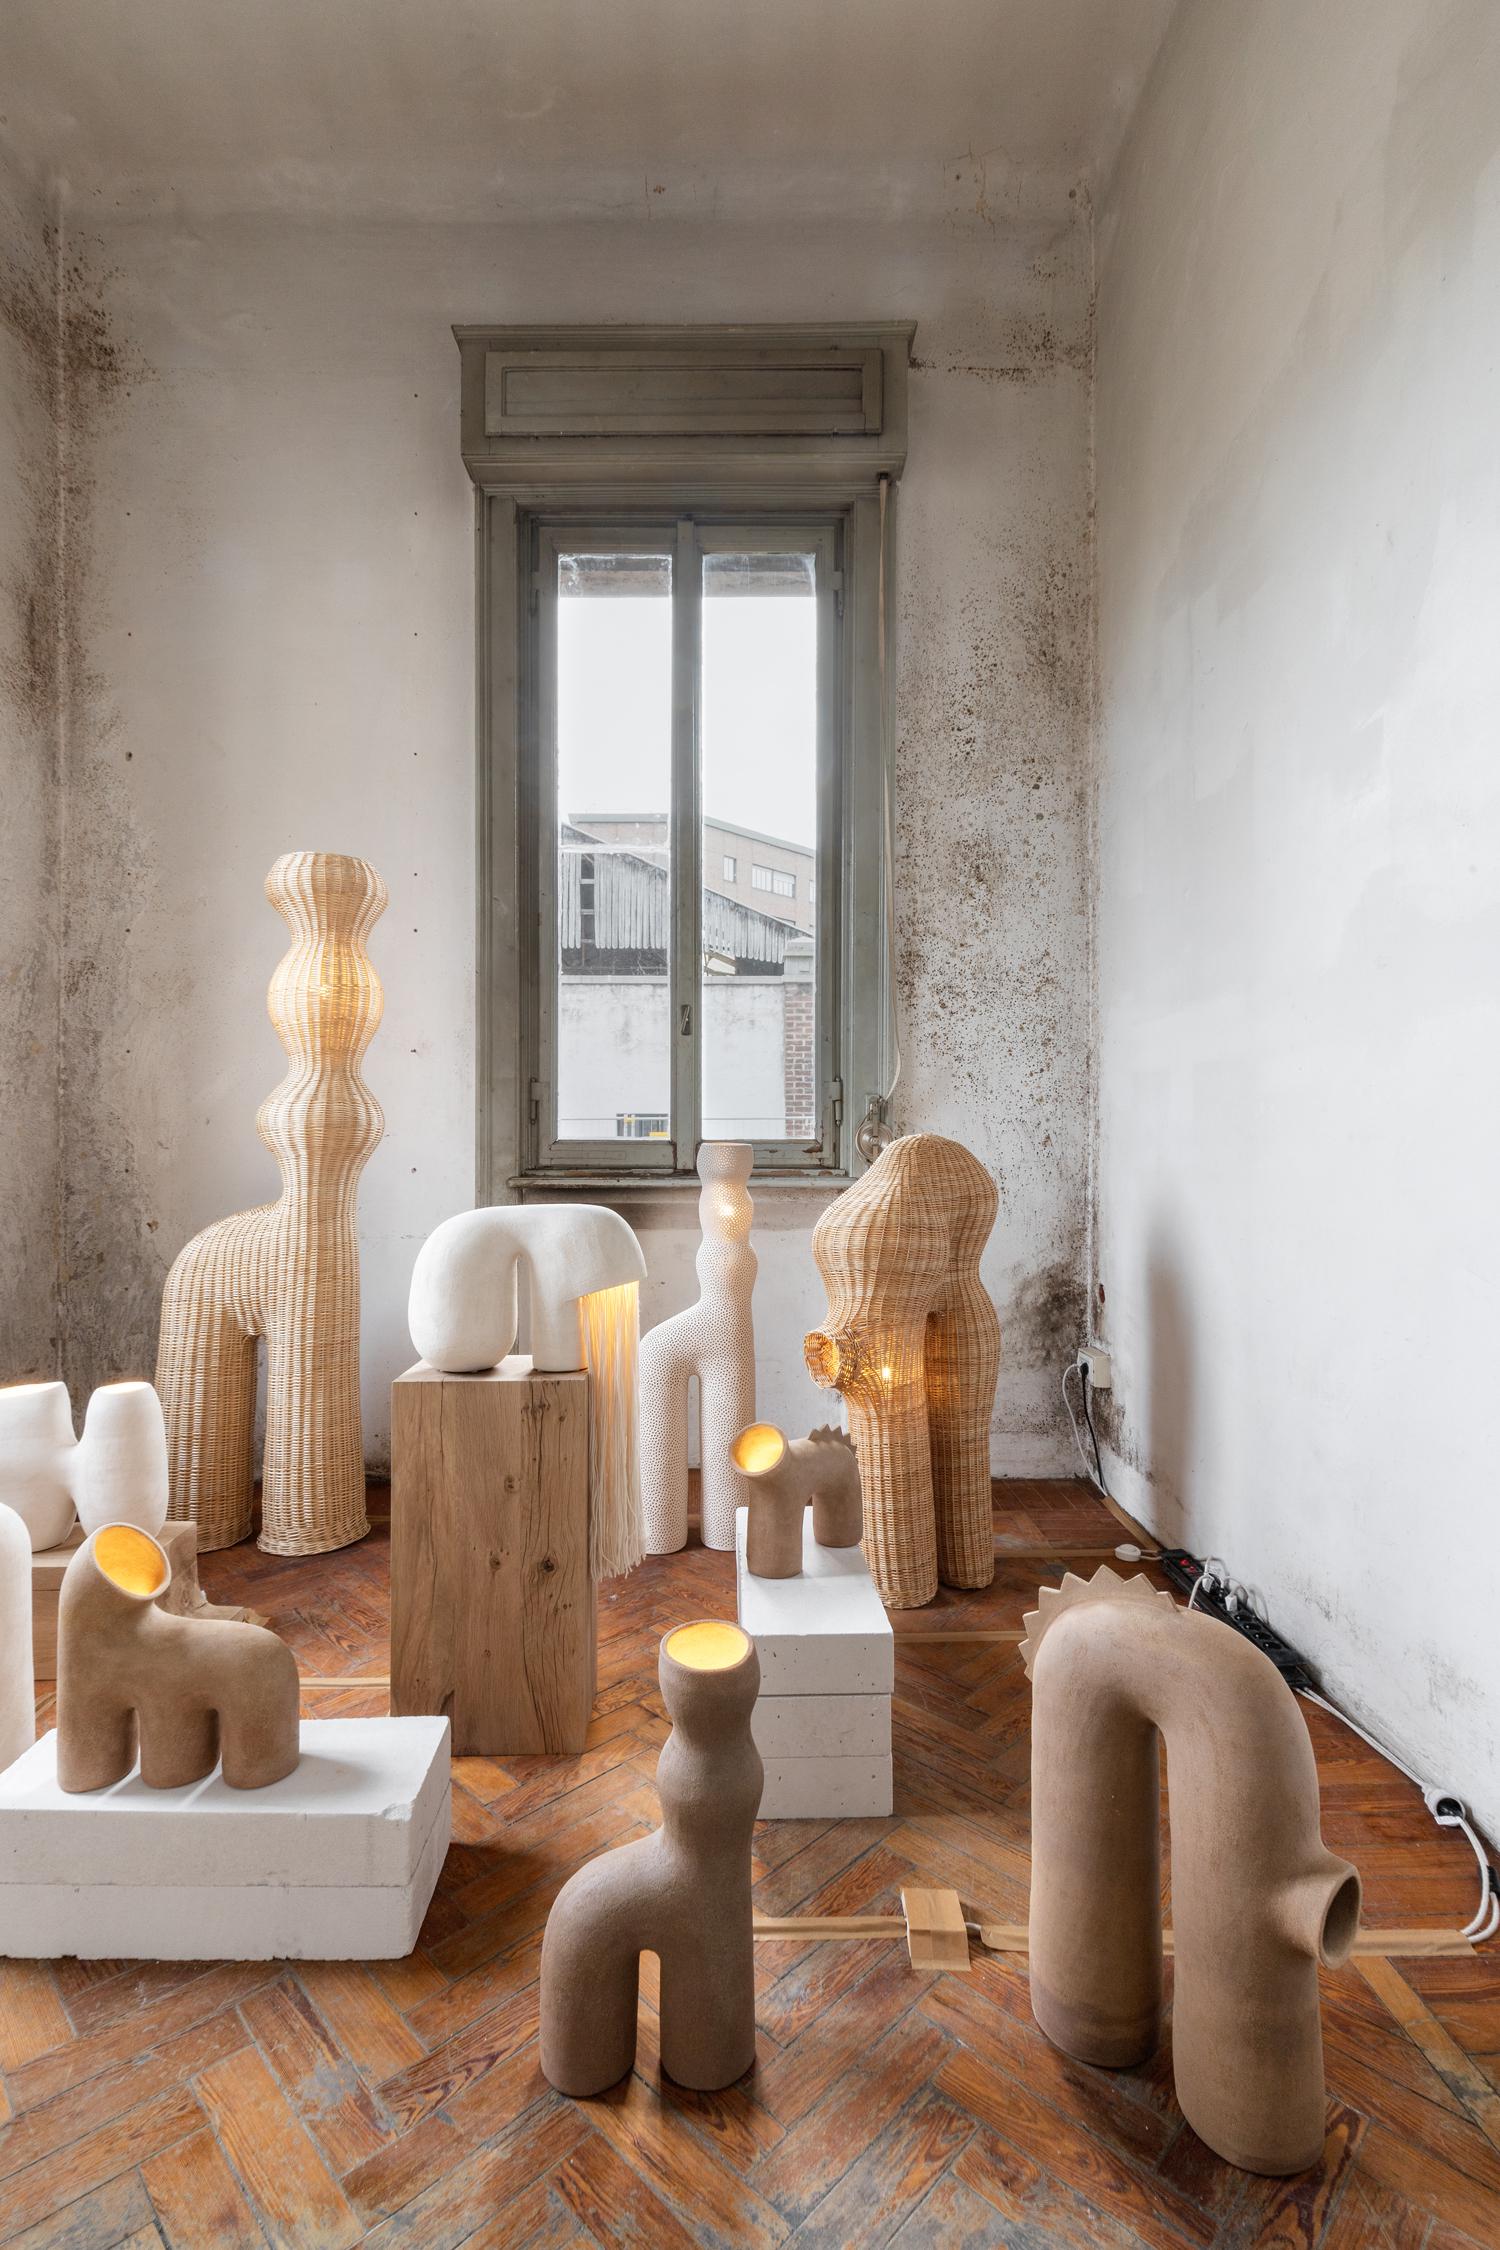 Коллекция керамики Primitive Island, Elisa Uberti в пространстве выставки Alcova